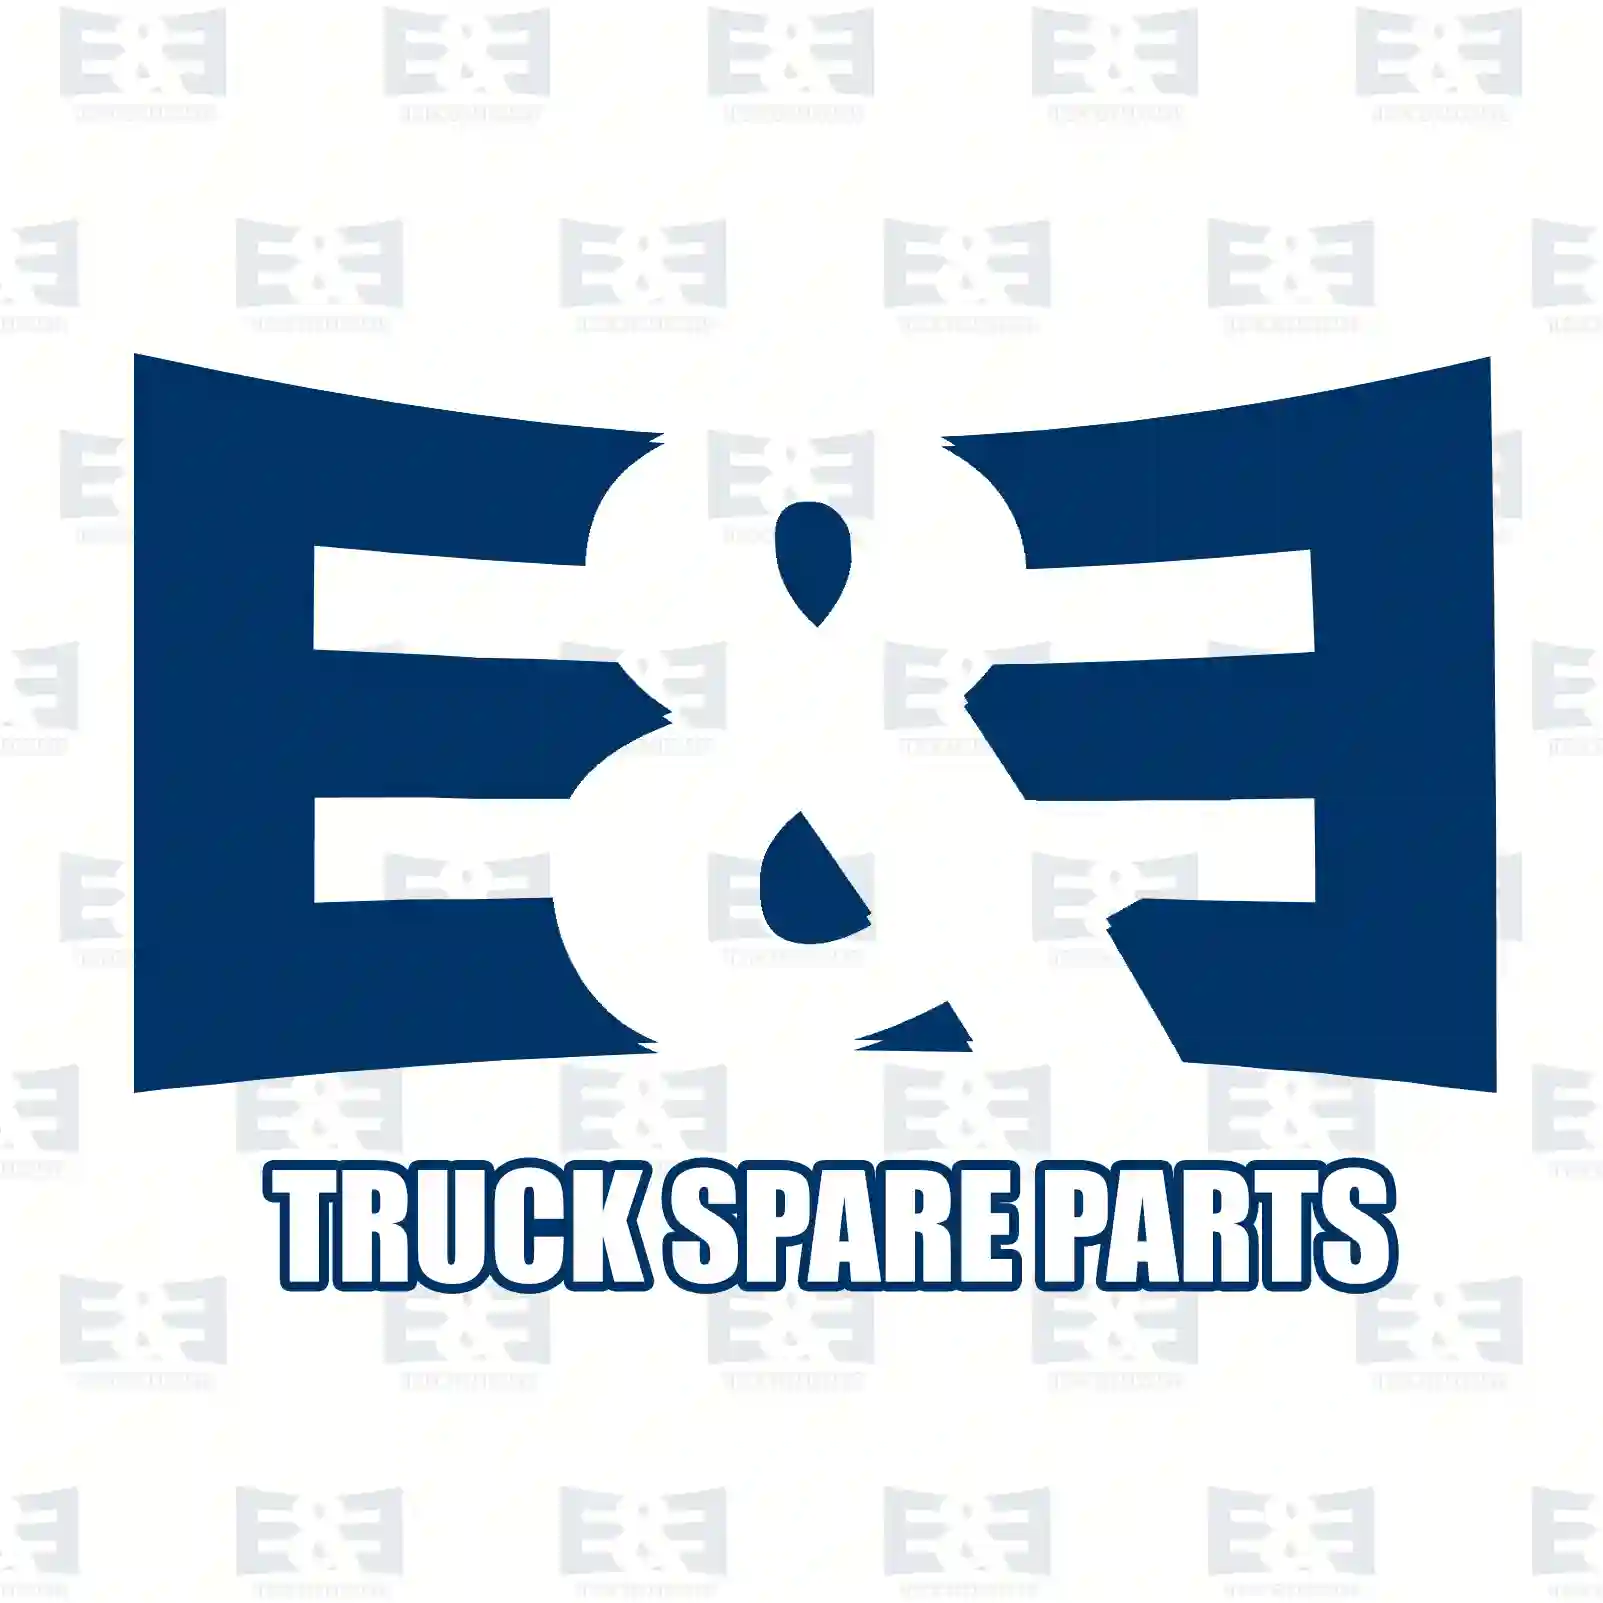 Engine brake switch, 2E2299487, 1247395, 1381784 ||  2E2299487 E&E Truck Spare Parts | Truck Spare Parts, Auotomotive Spare Parts Engine brake switch, 2E2299487, 1247395, 1381784 ||  2E2299487 E&E Truck Spare Parts | Truck Spare Parts, Auotomotive Spare Parts